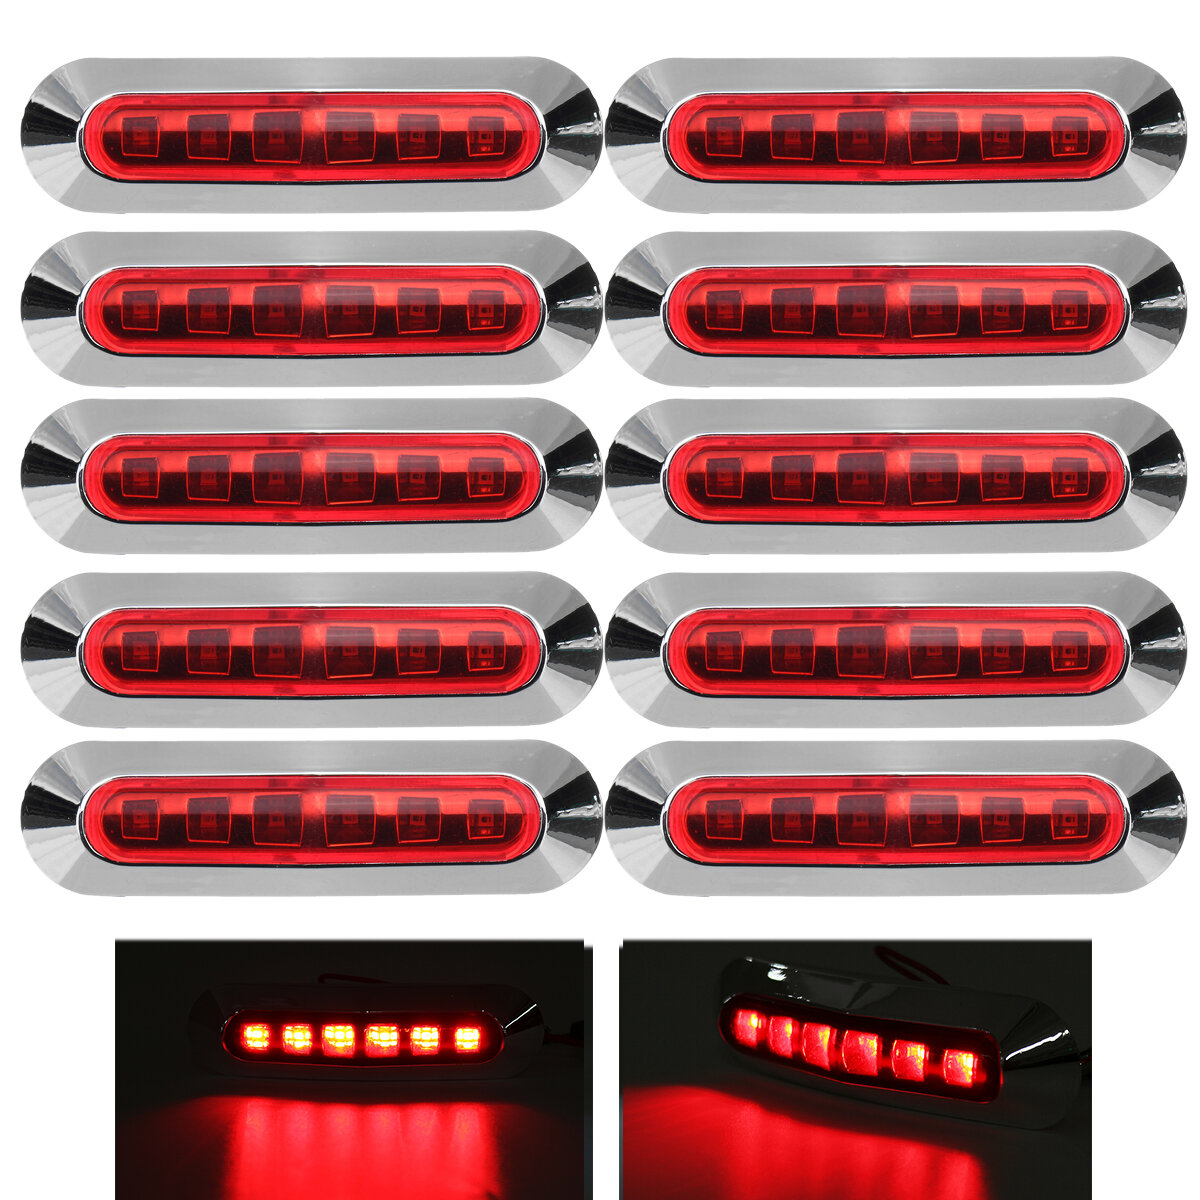 

10PCS 12V 24V 6 LED Side Marker Lights Lamp Red for Truck Trailer Caravan Lorry Van